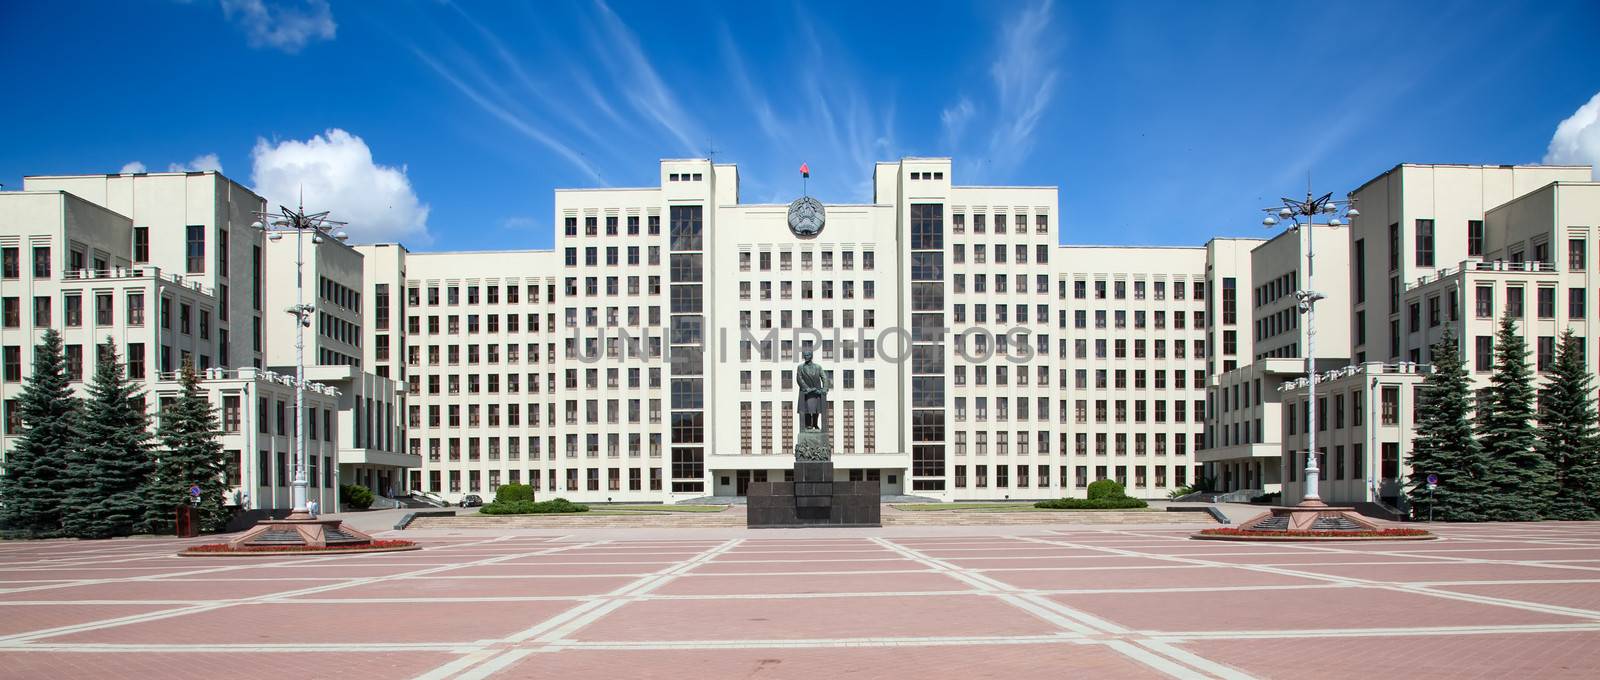 Parliament building in Minsk. Belarus by swisshippo